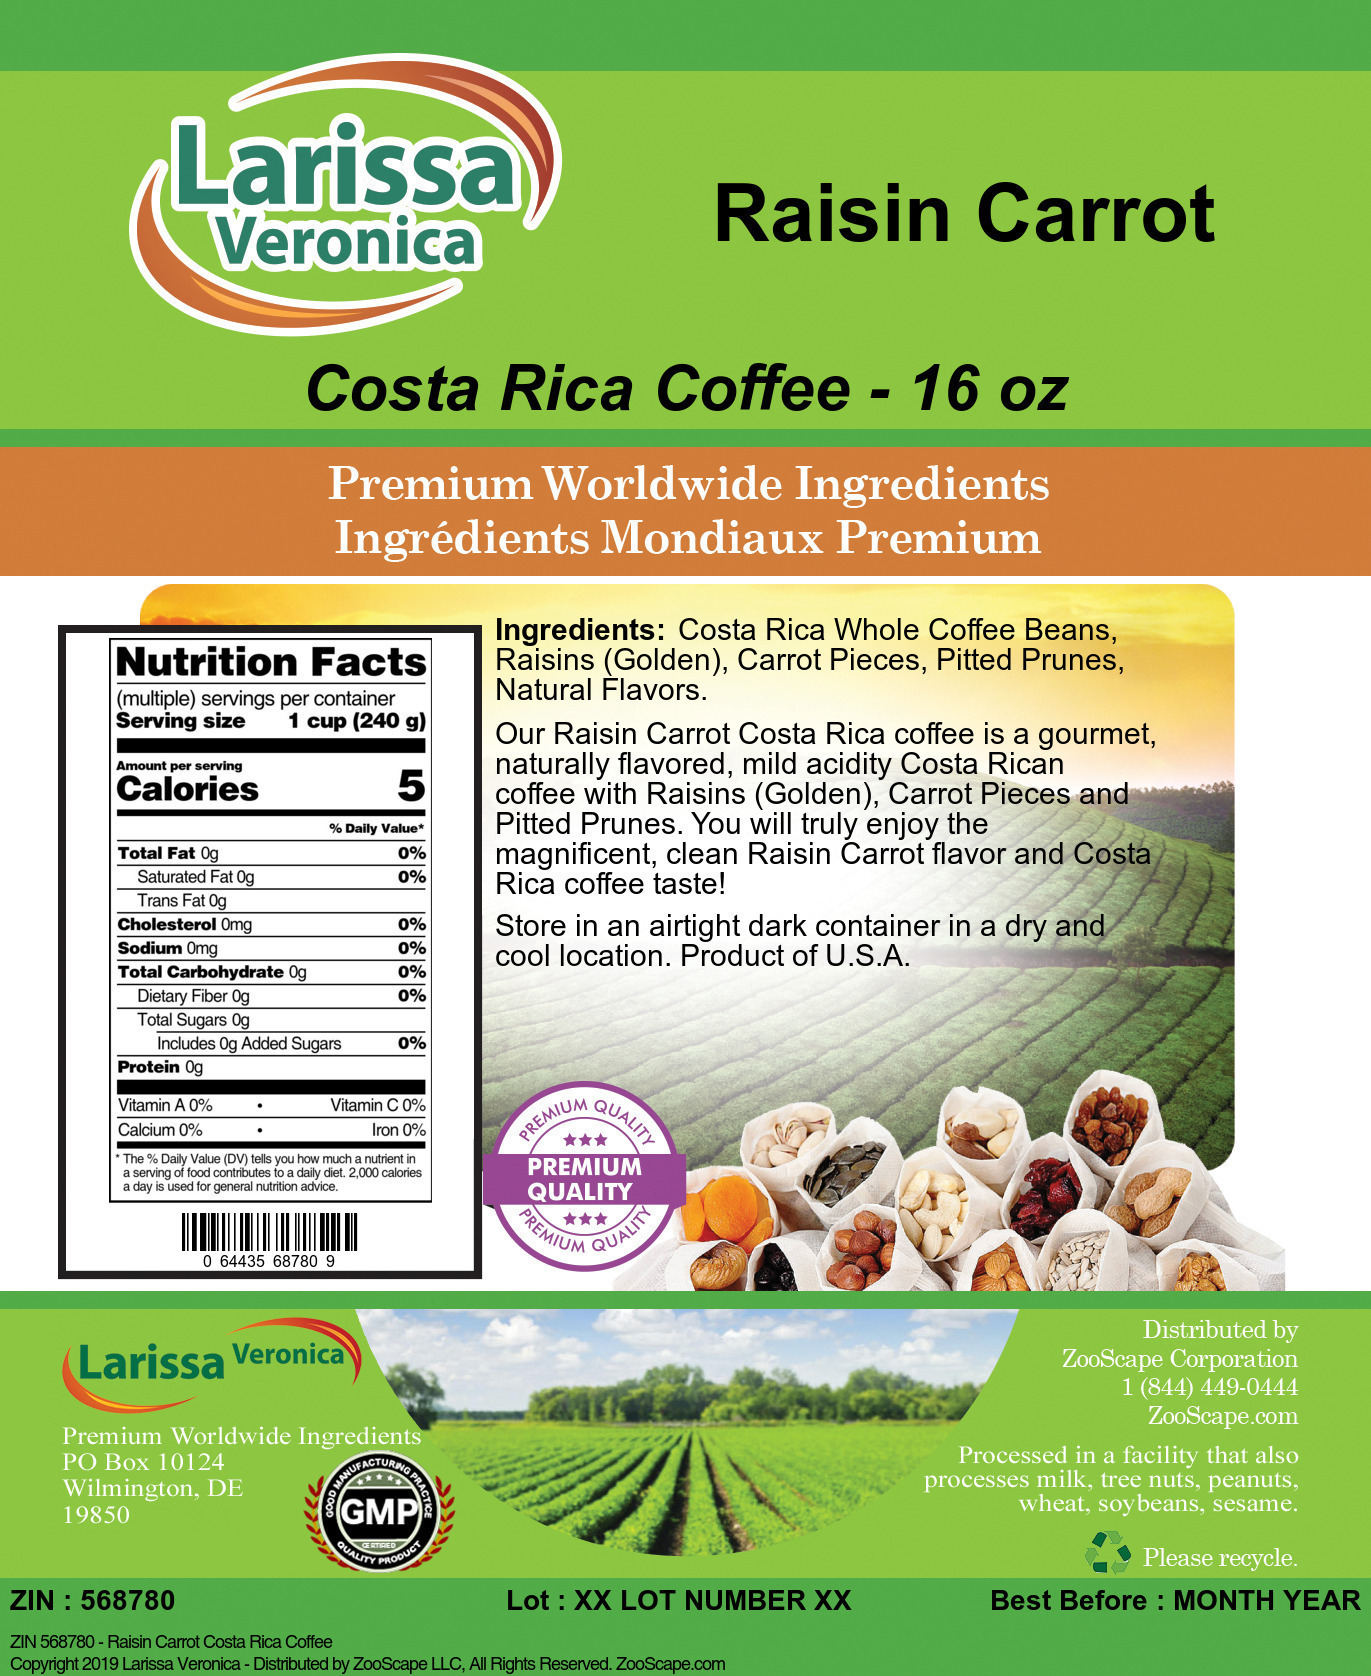 Raisin Carrot Costa Rica Coffee - Label